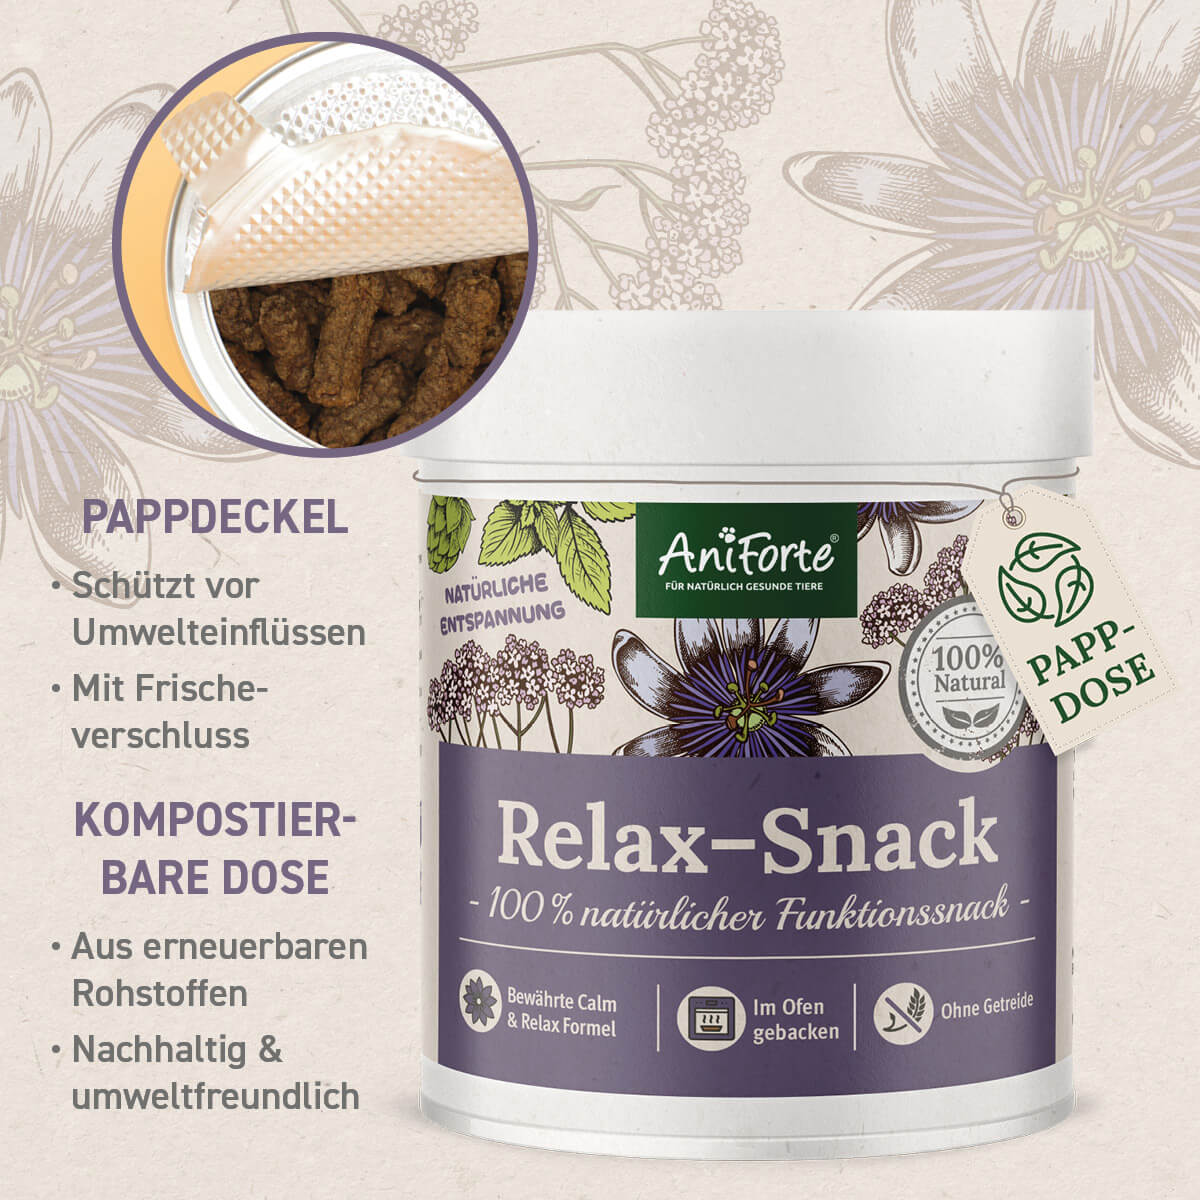 Relax-Snack mit Pappdeckel und Kompostierbarer Dose hergestellt, um die Umwelt und die Snacks zu schützen- AniForte